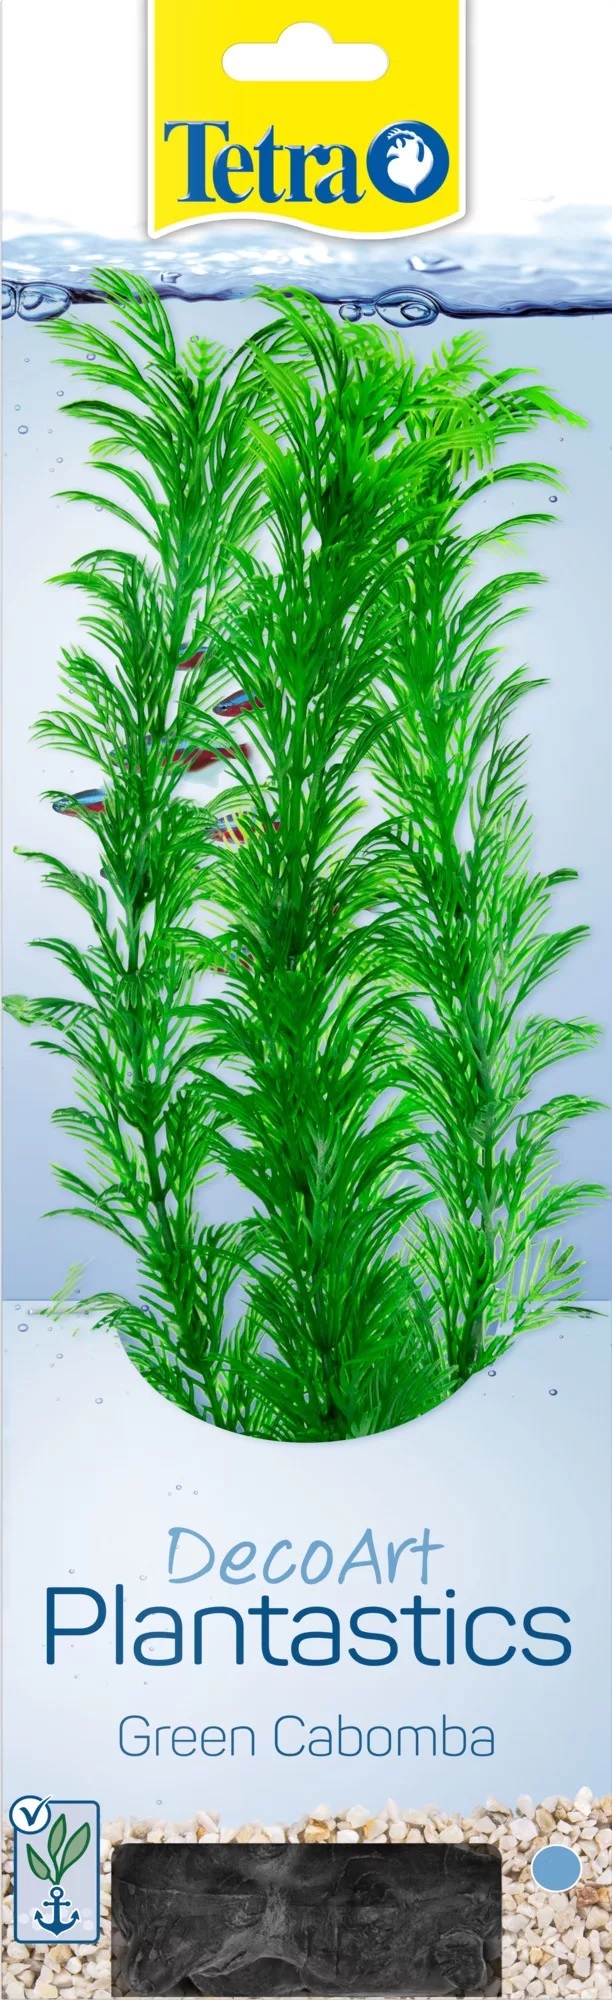 Растение искусственное Tetra deco art р.l 30см кабомба 28012